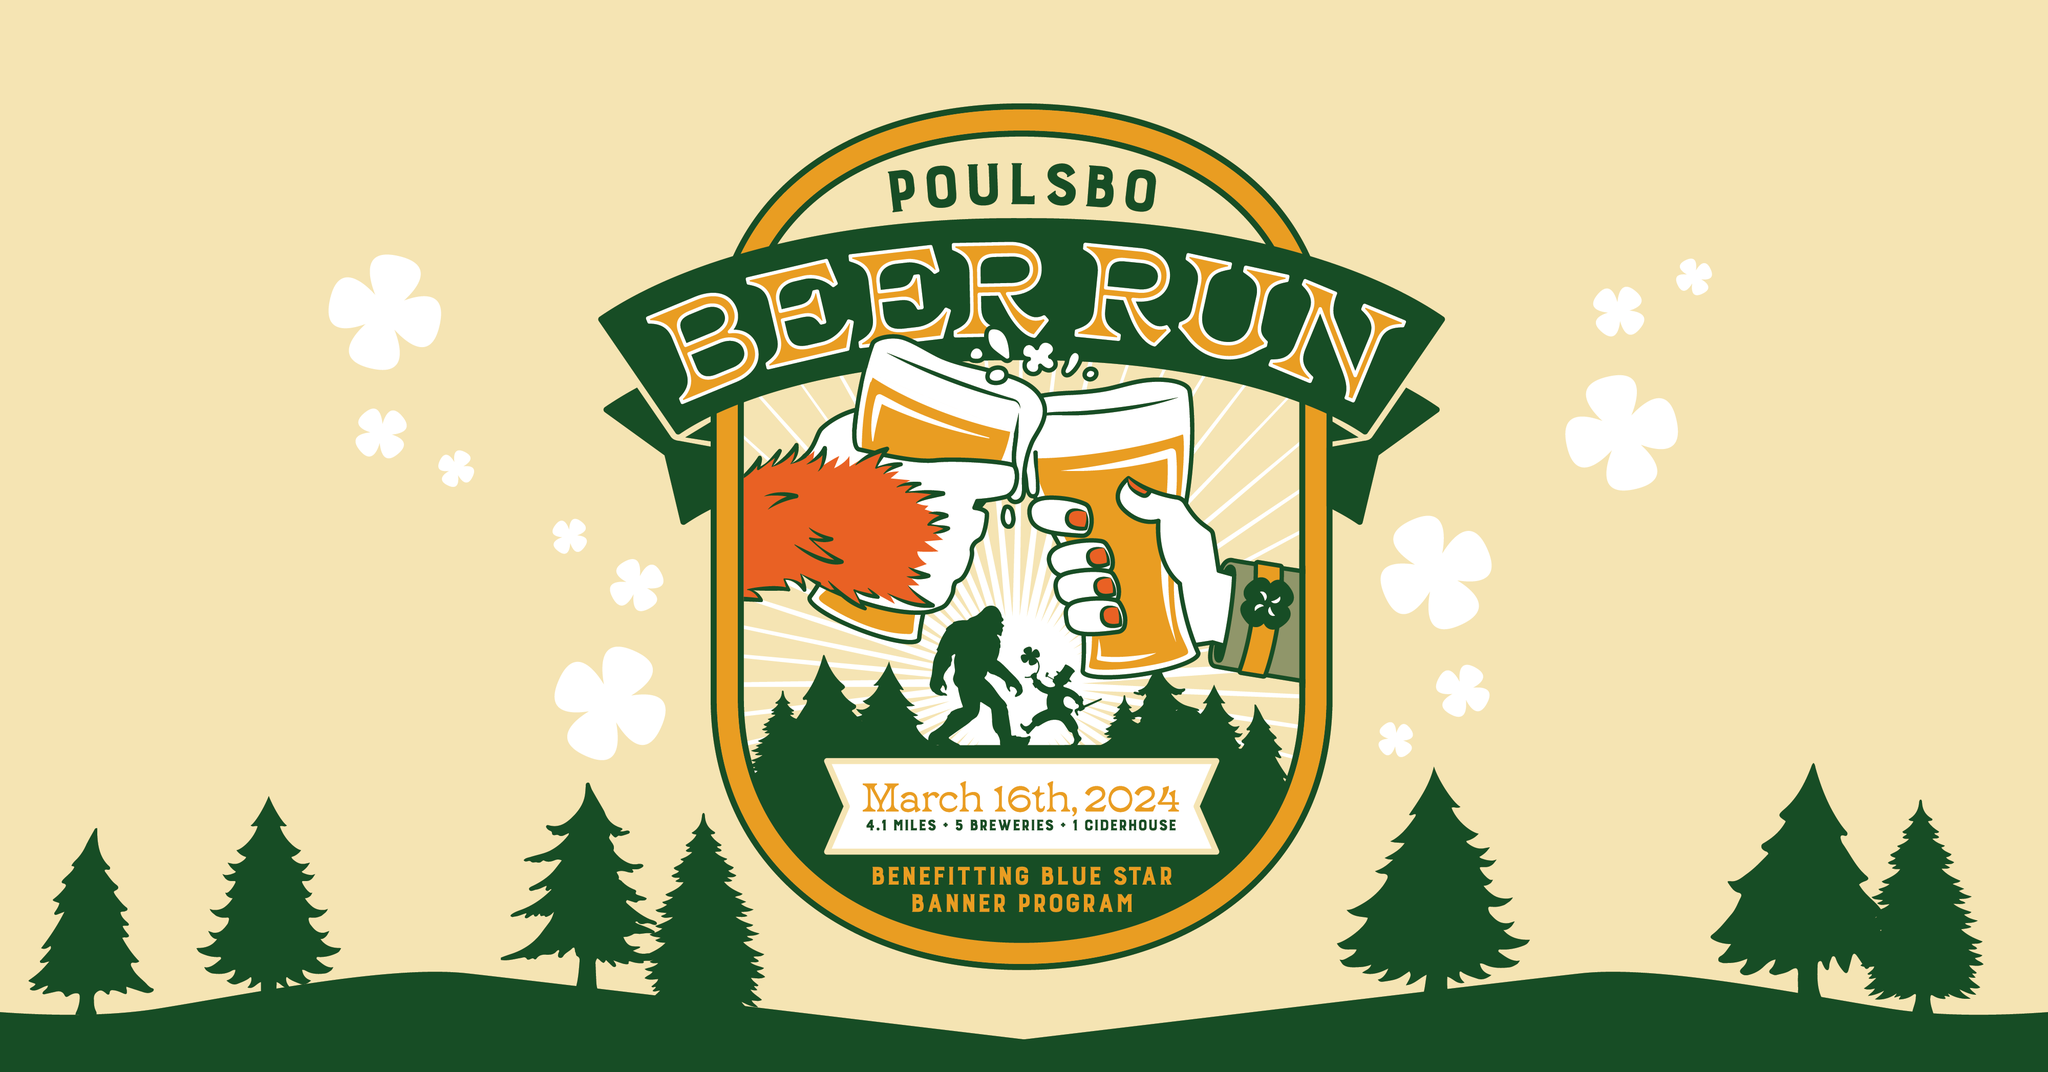 Poulsbo Beer Run